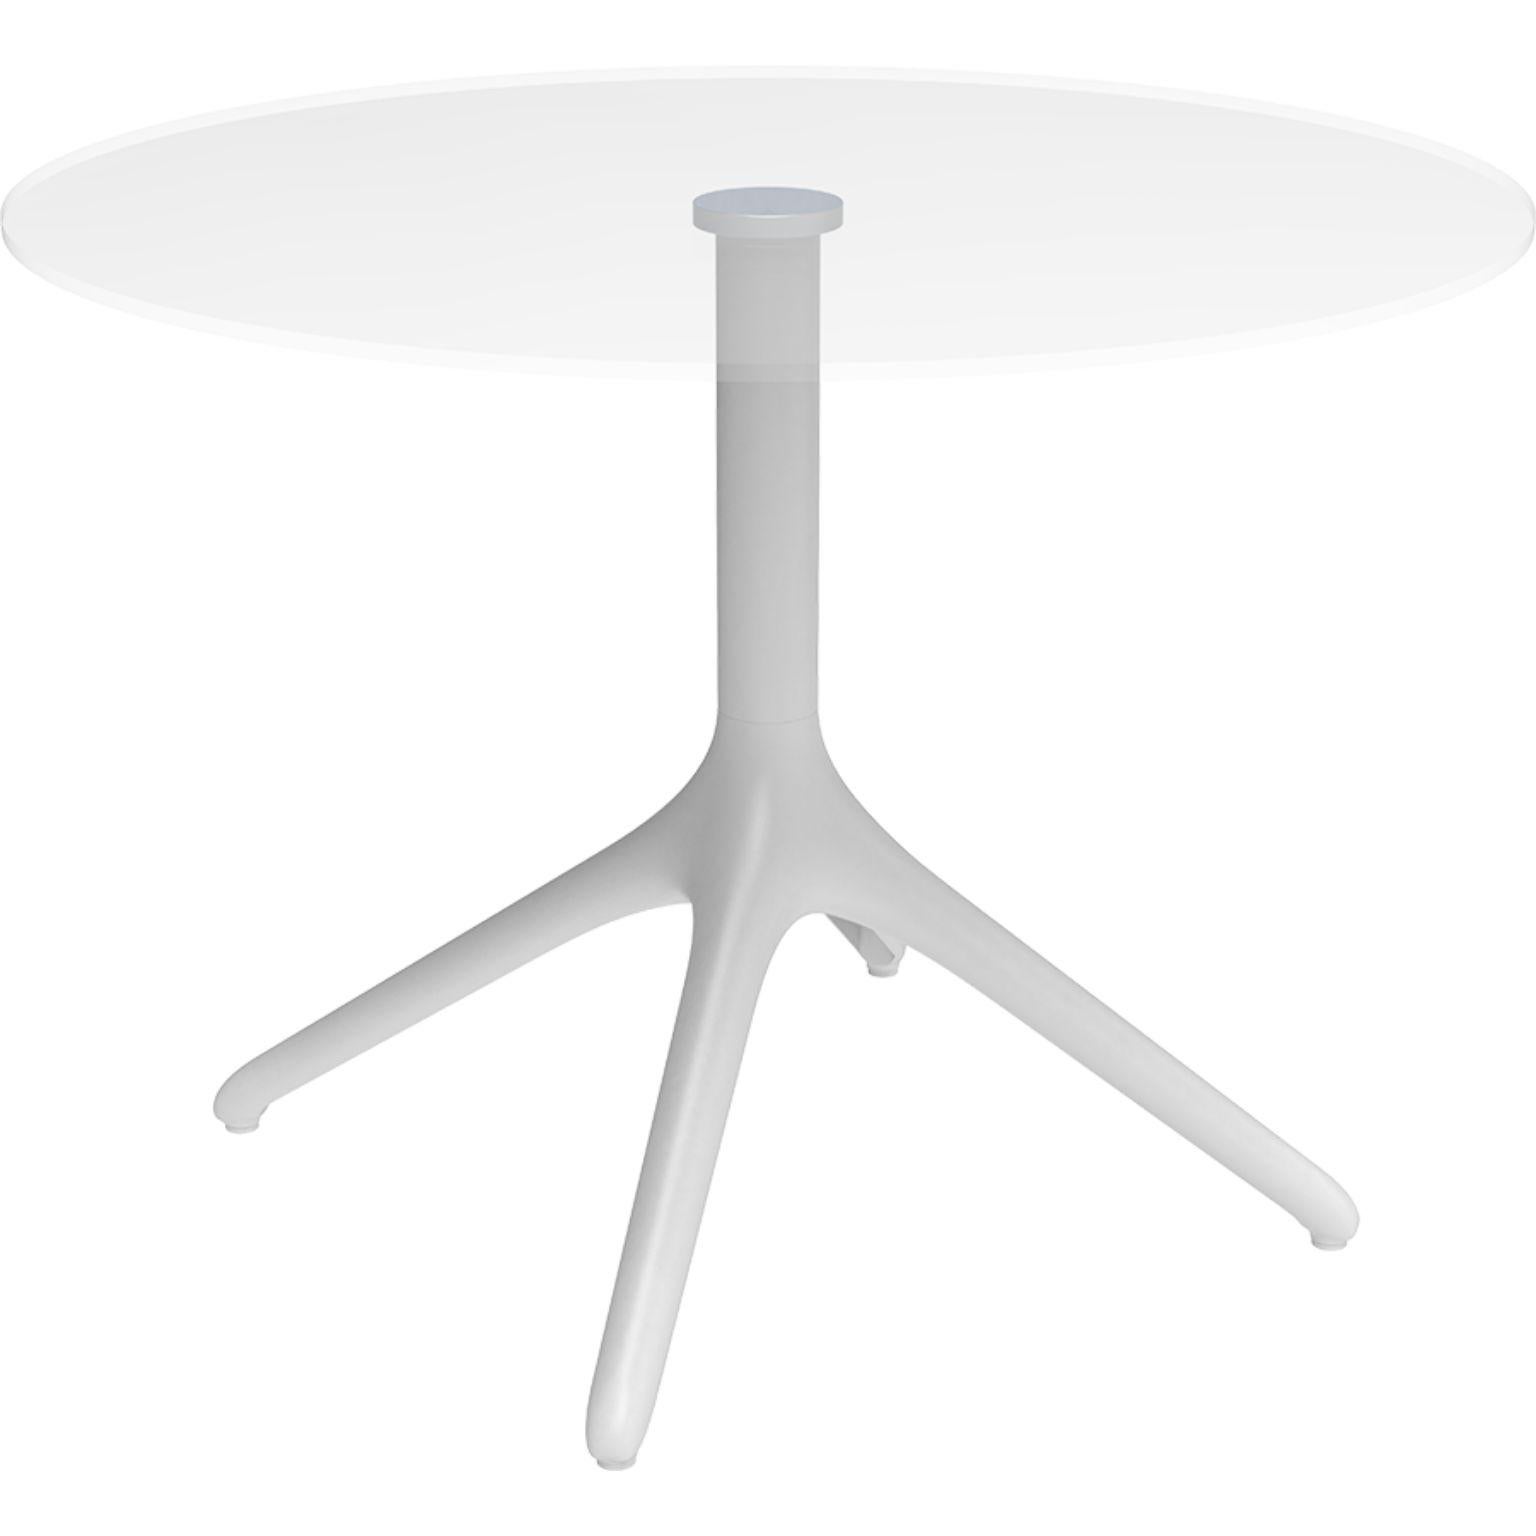 Table Uni blanche XL 73 par MOWEE
Dimensions : D50 x H73 cm
Matériau : Aluminium, verre tempéré
Poids : 9 kg
Également disponible en différentes couleurs et finitions.

Une table conçue pour être la plus polyvalente possible et pouvant